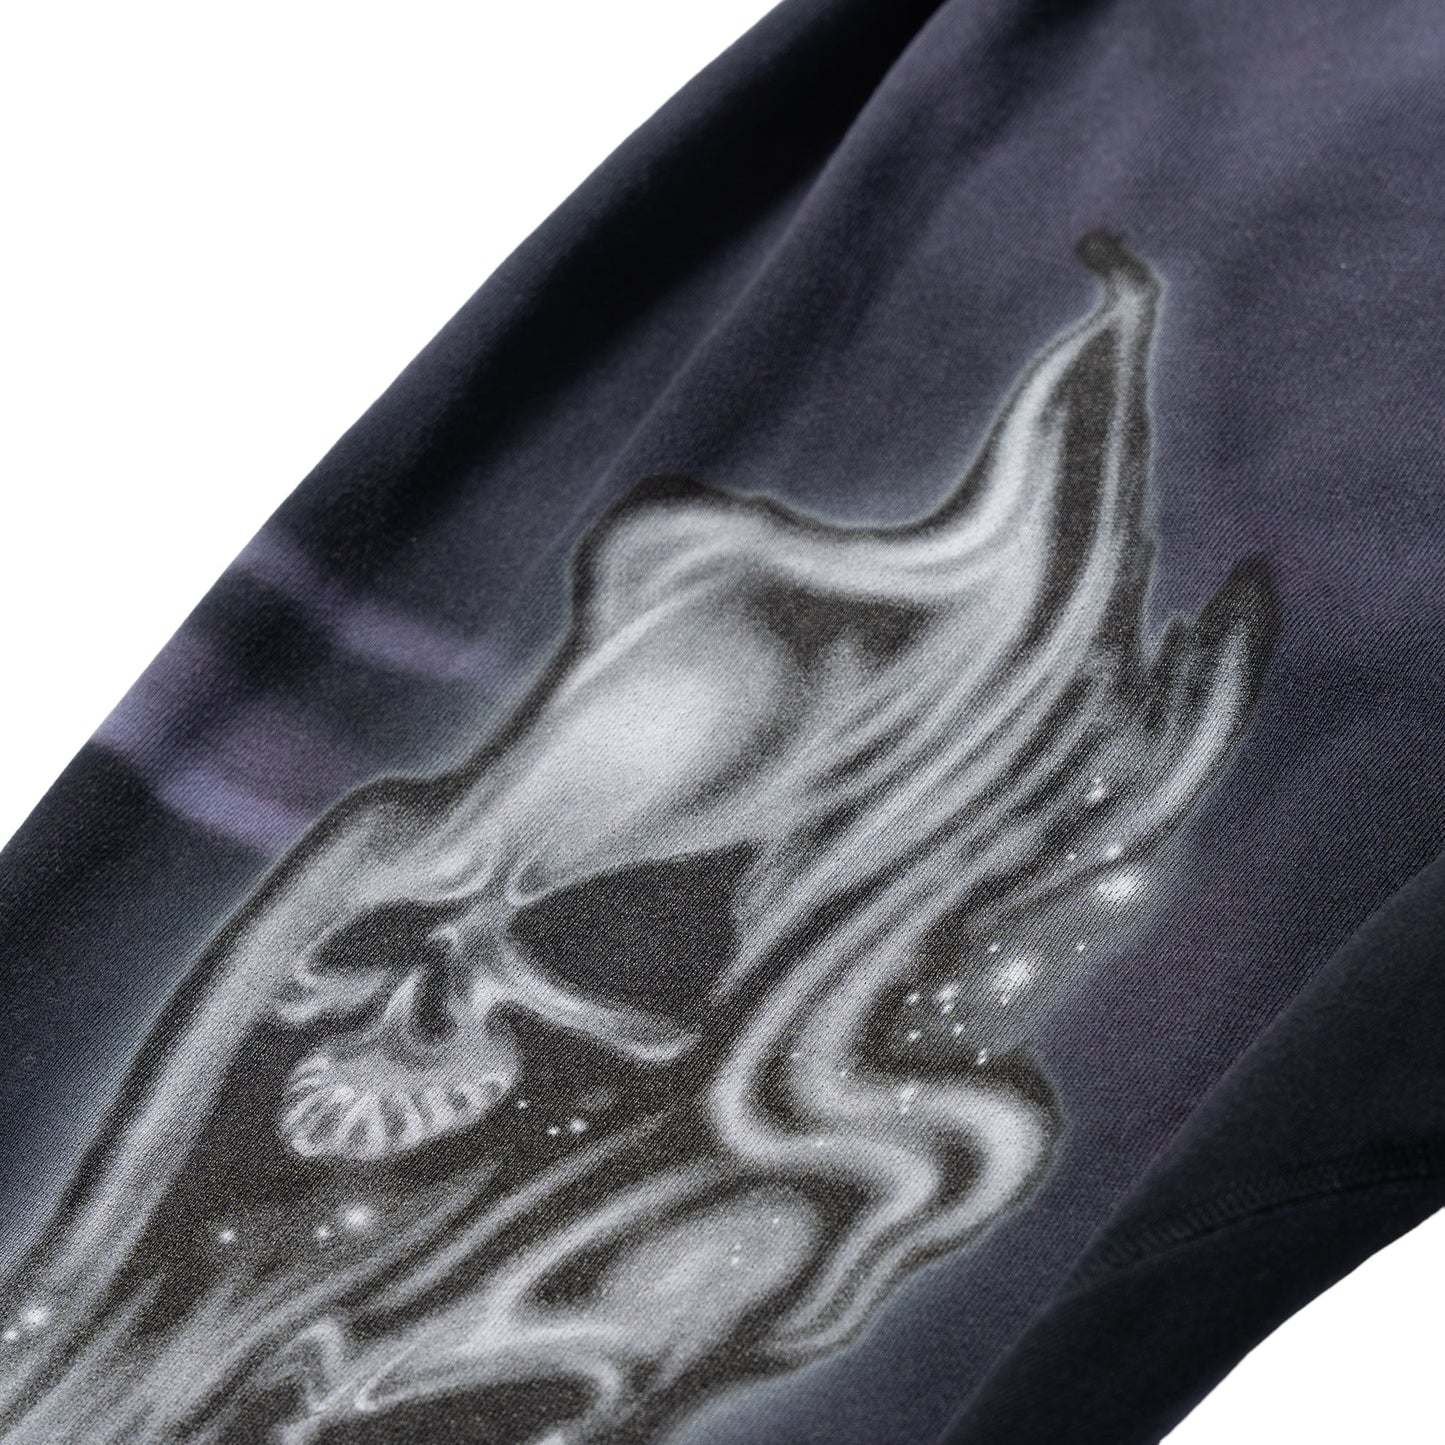 Hellstar Airbrushed Skull Sweatpants (Closed Elastic Bottom) - Paroissesaintefoy Sneakers Sale Online